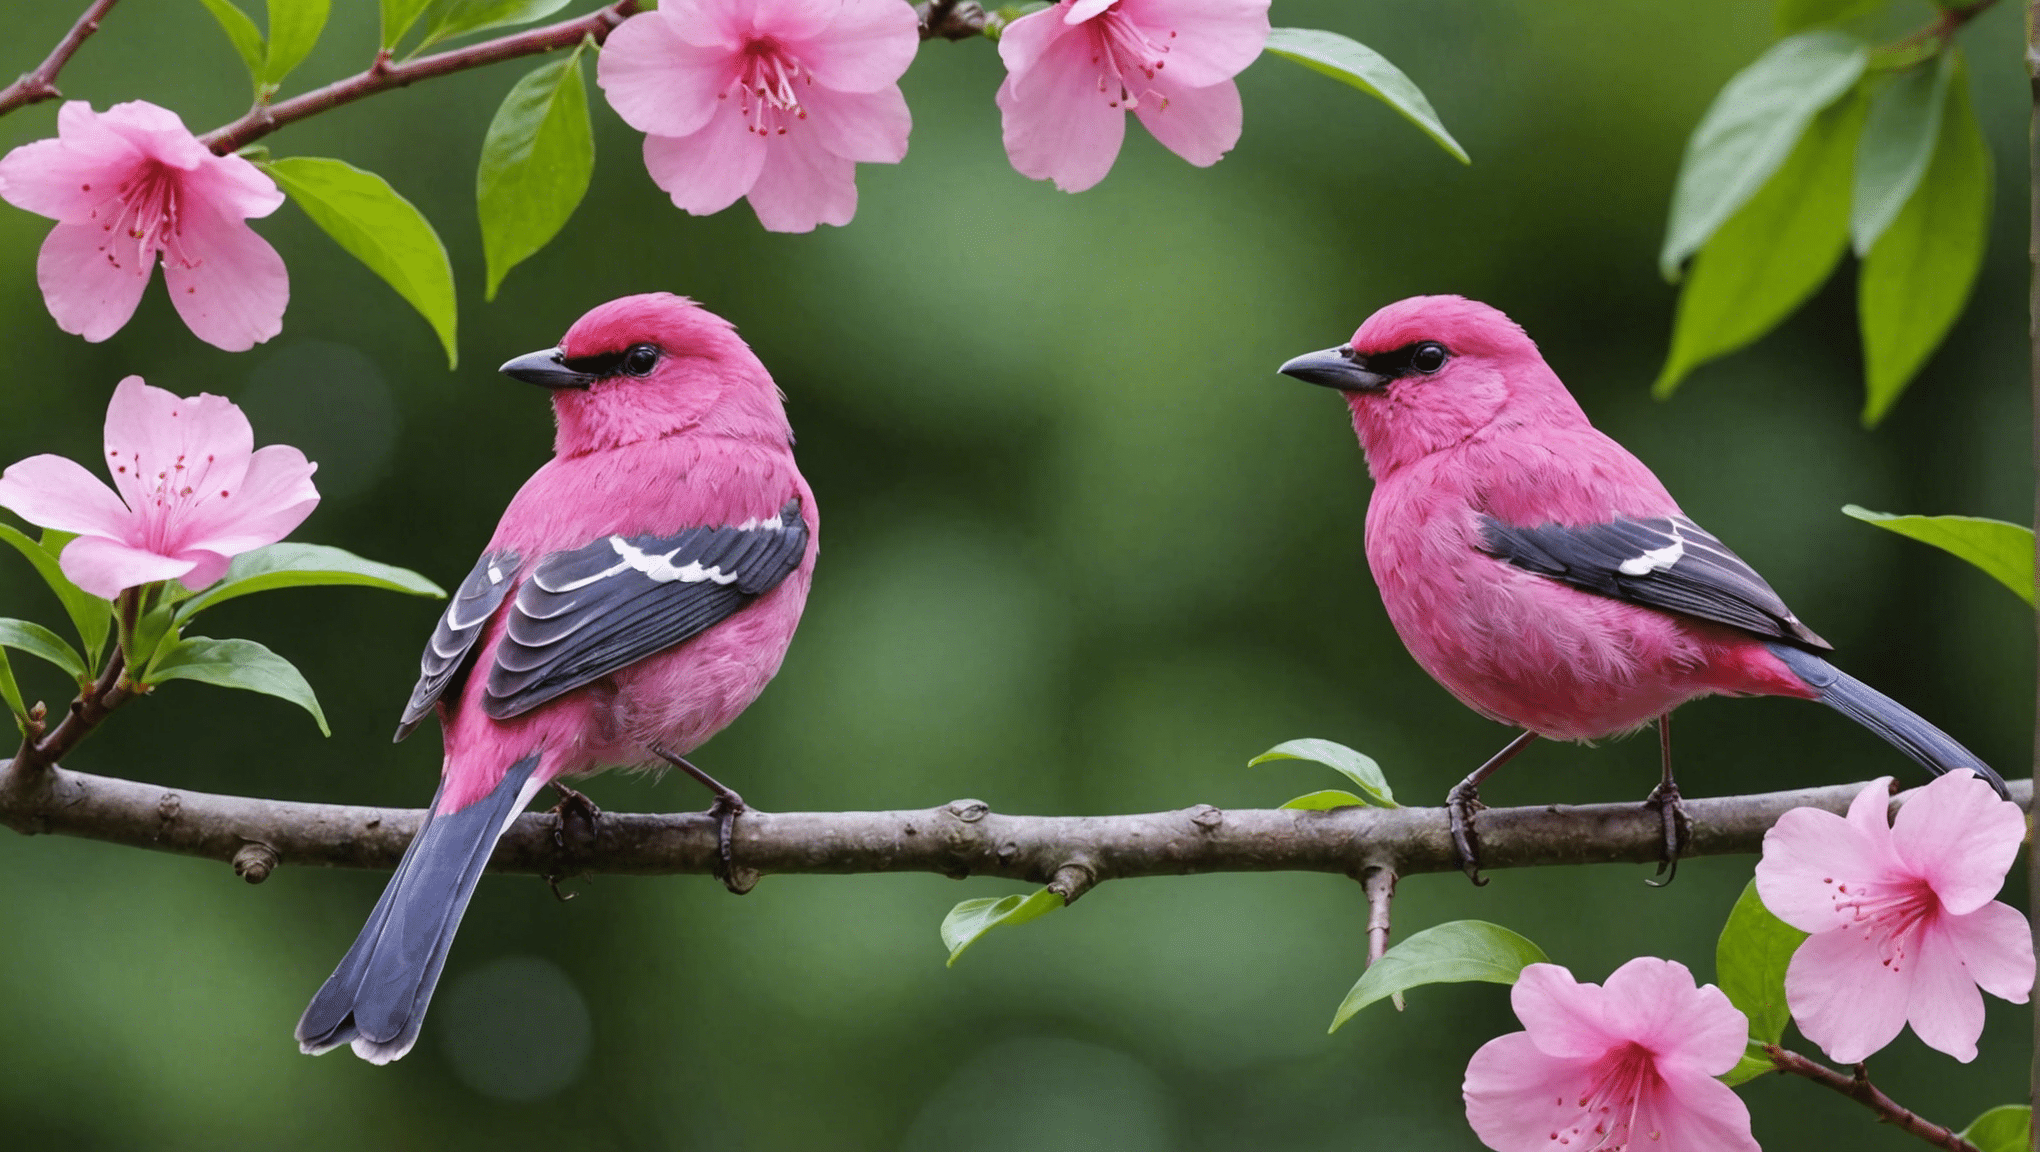 scopri se gli uccelli rosa esistono davvero con questa intrigante discussione sull'esistenza degli uccelli rosa, sulle loro caratteristiche e sul loro significato nel mondo naturale.